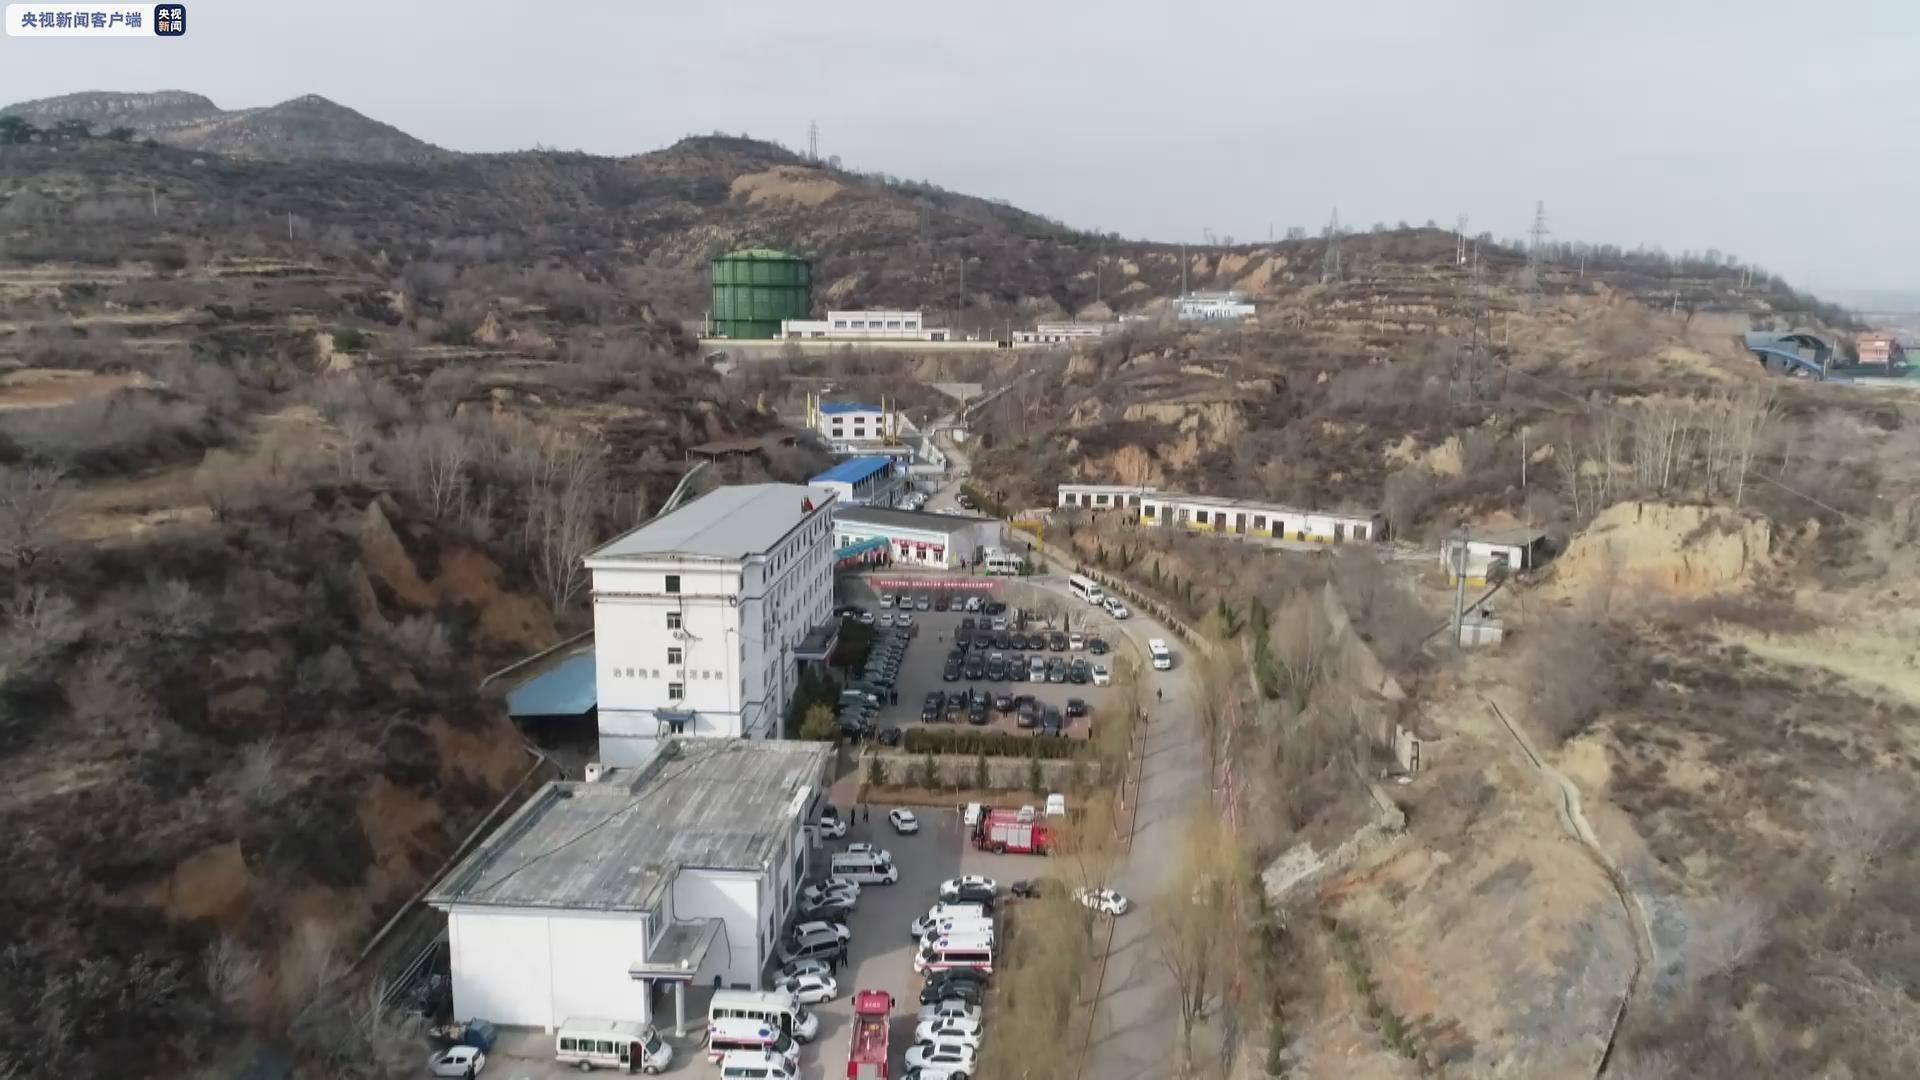 山西省安委办对石港煤业3·25重大隐患与安全事故责任者进行追责